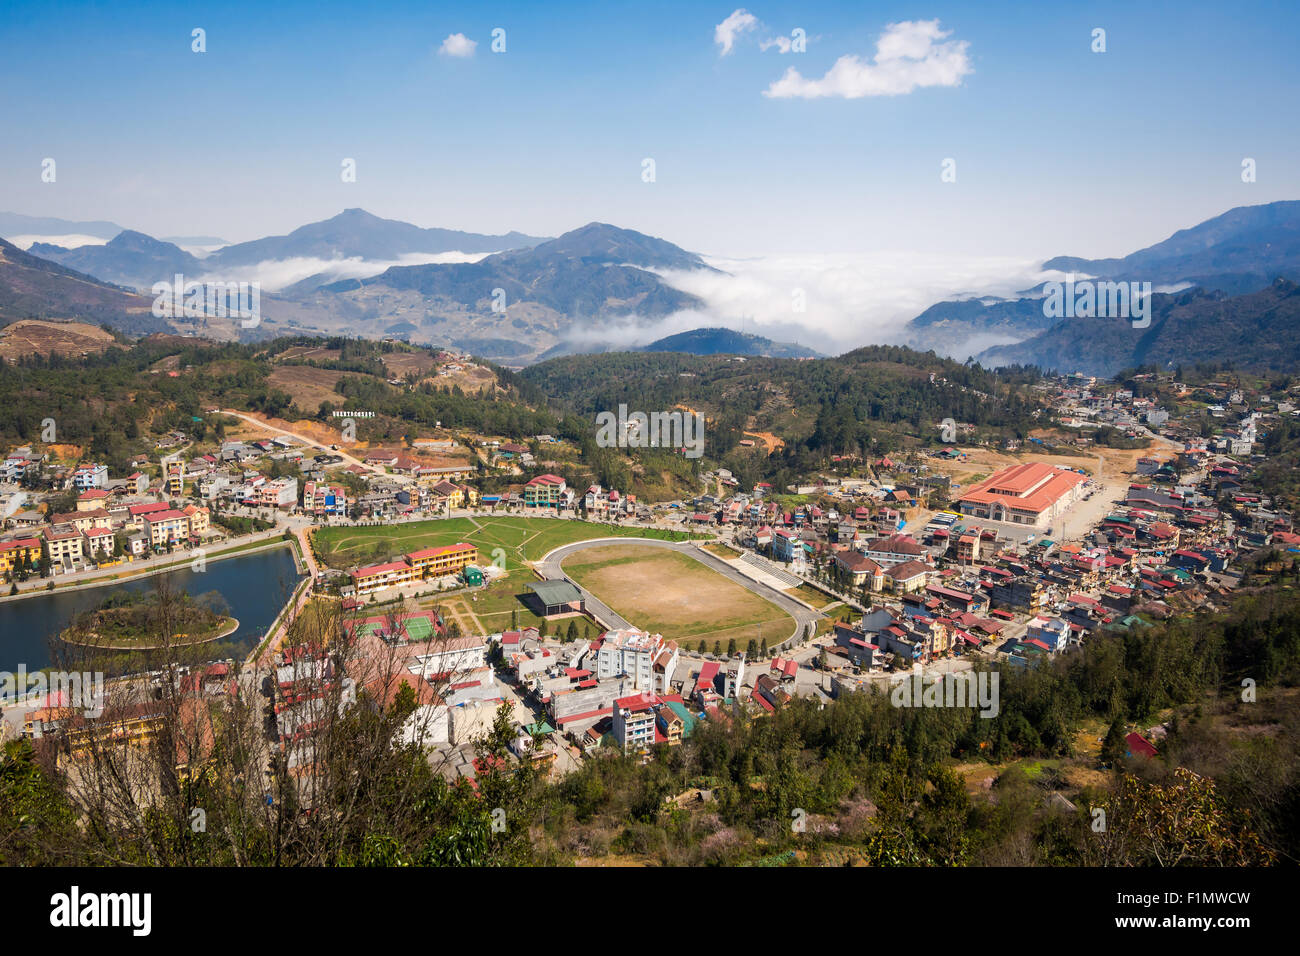 Vista general de la ciudad de Sapa, provincia de Lao Cai, al norte de Vietnam. Foto de stock